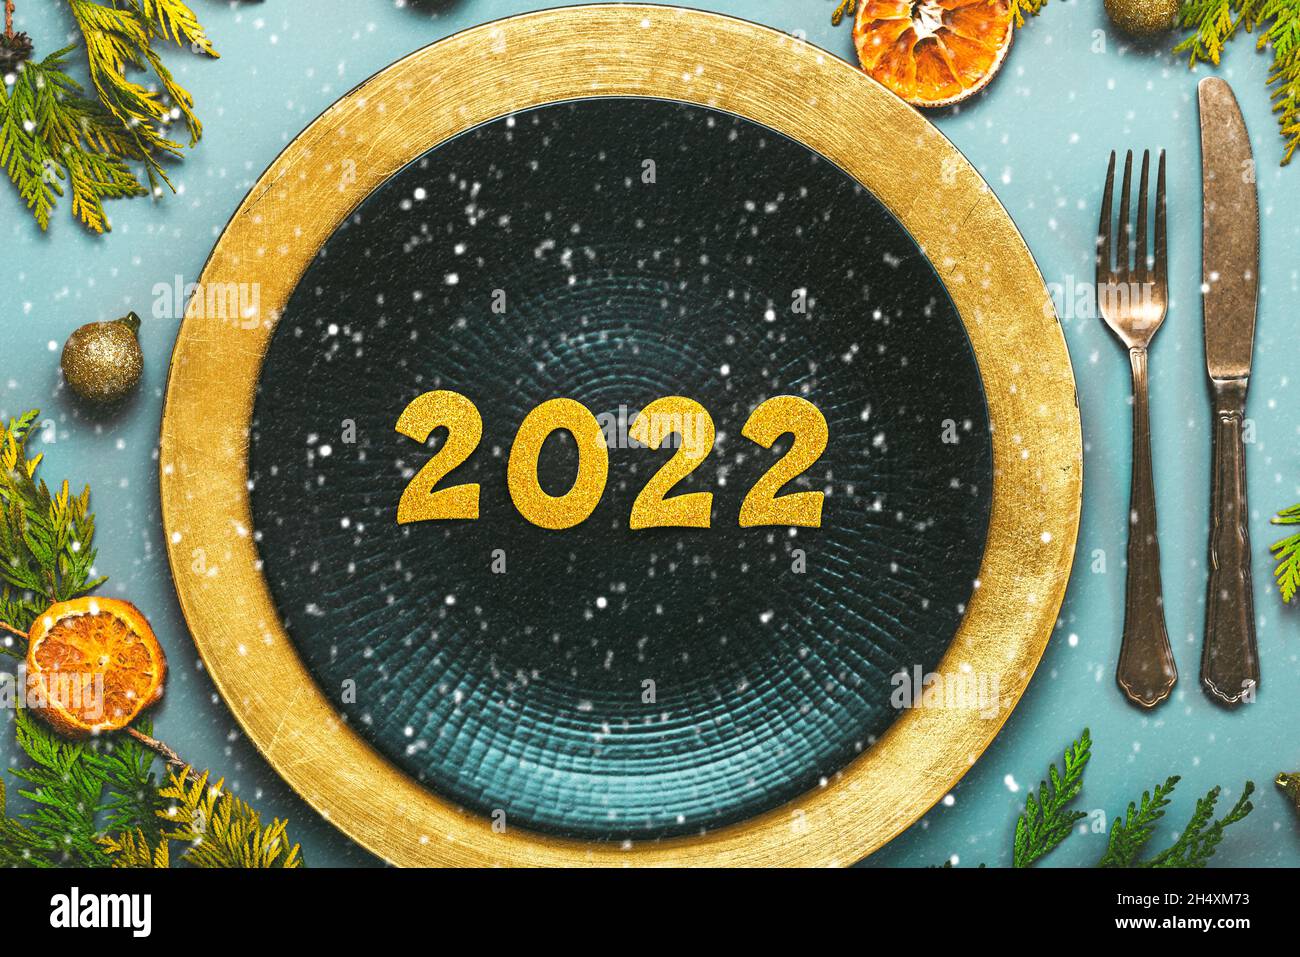 Bonne année 2022.Vue de dessus des numéros dorés 2022 sur l'assiette pour le dîner de Noël et des flocons de neige sur fond bleu.Célébration de la Saint-Sylvestre conc Banque D'Images